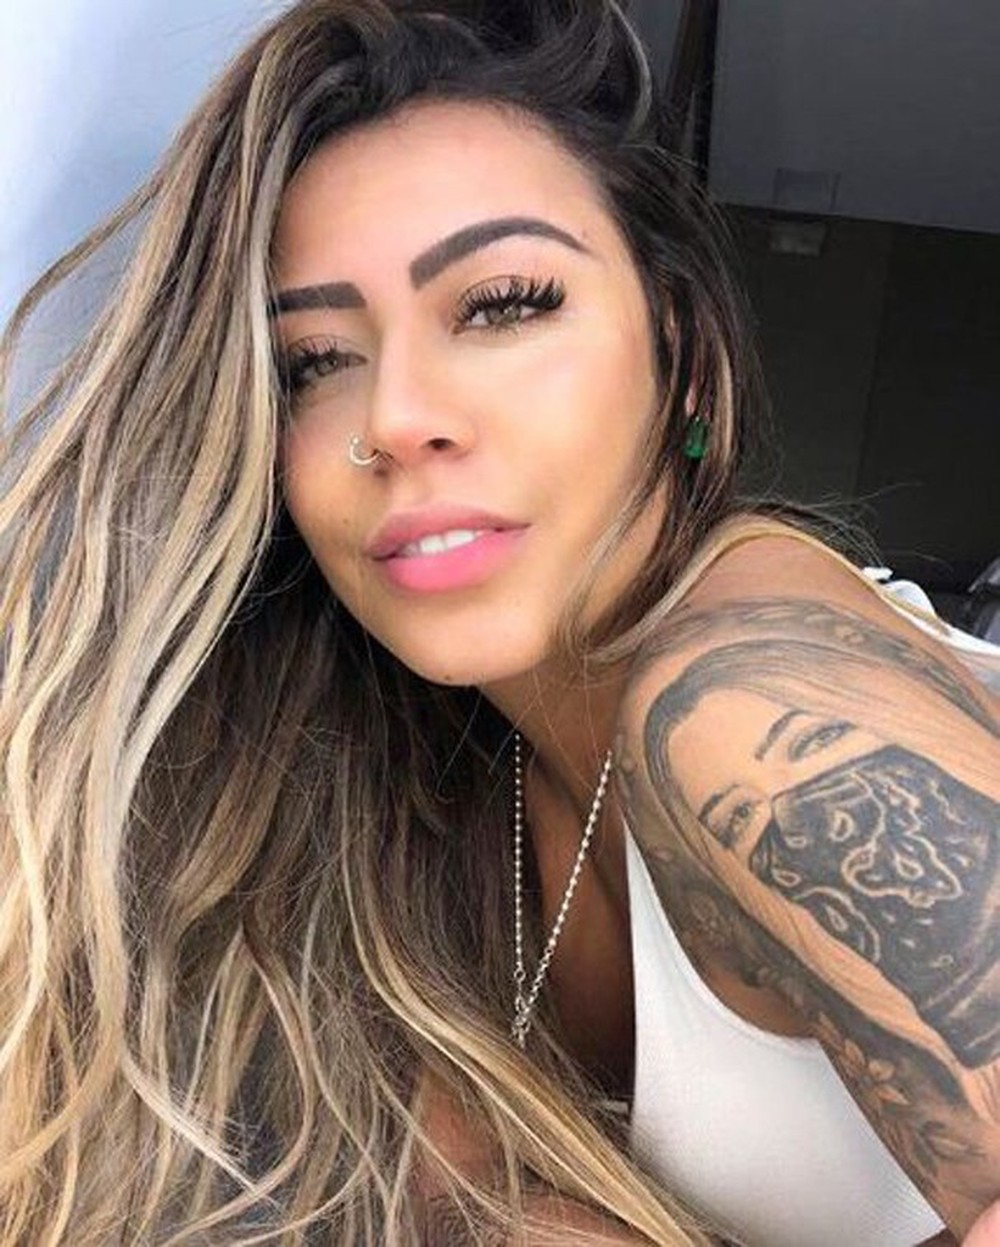 Rafaella Mostra Tatuagem Com O Seu Próprio Rosto Em Selfie No Instagram